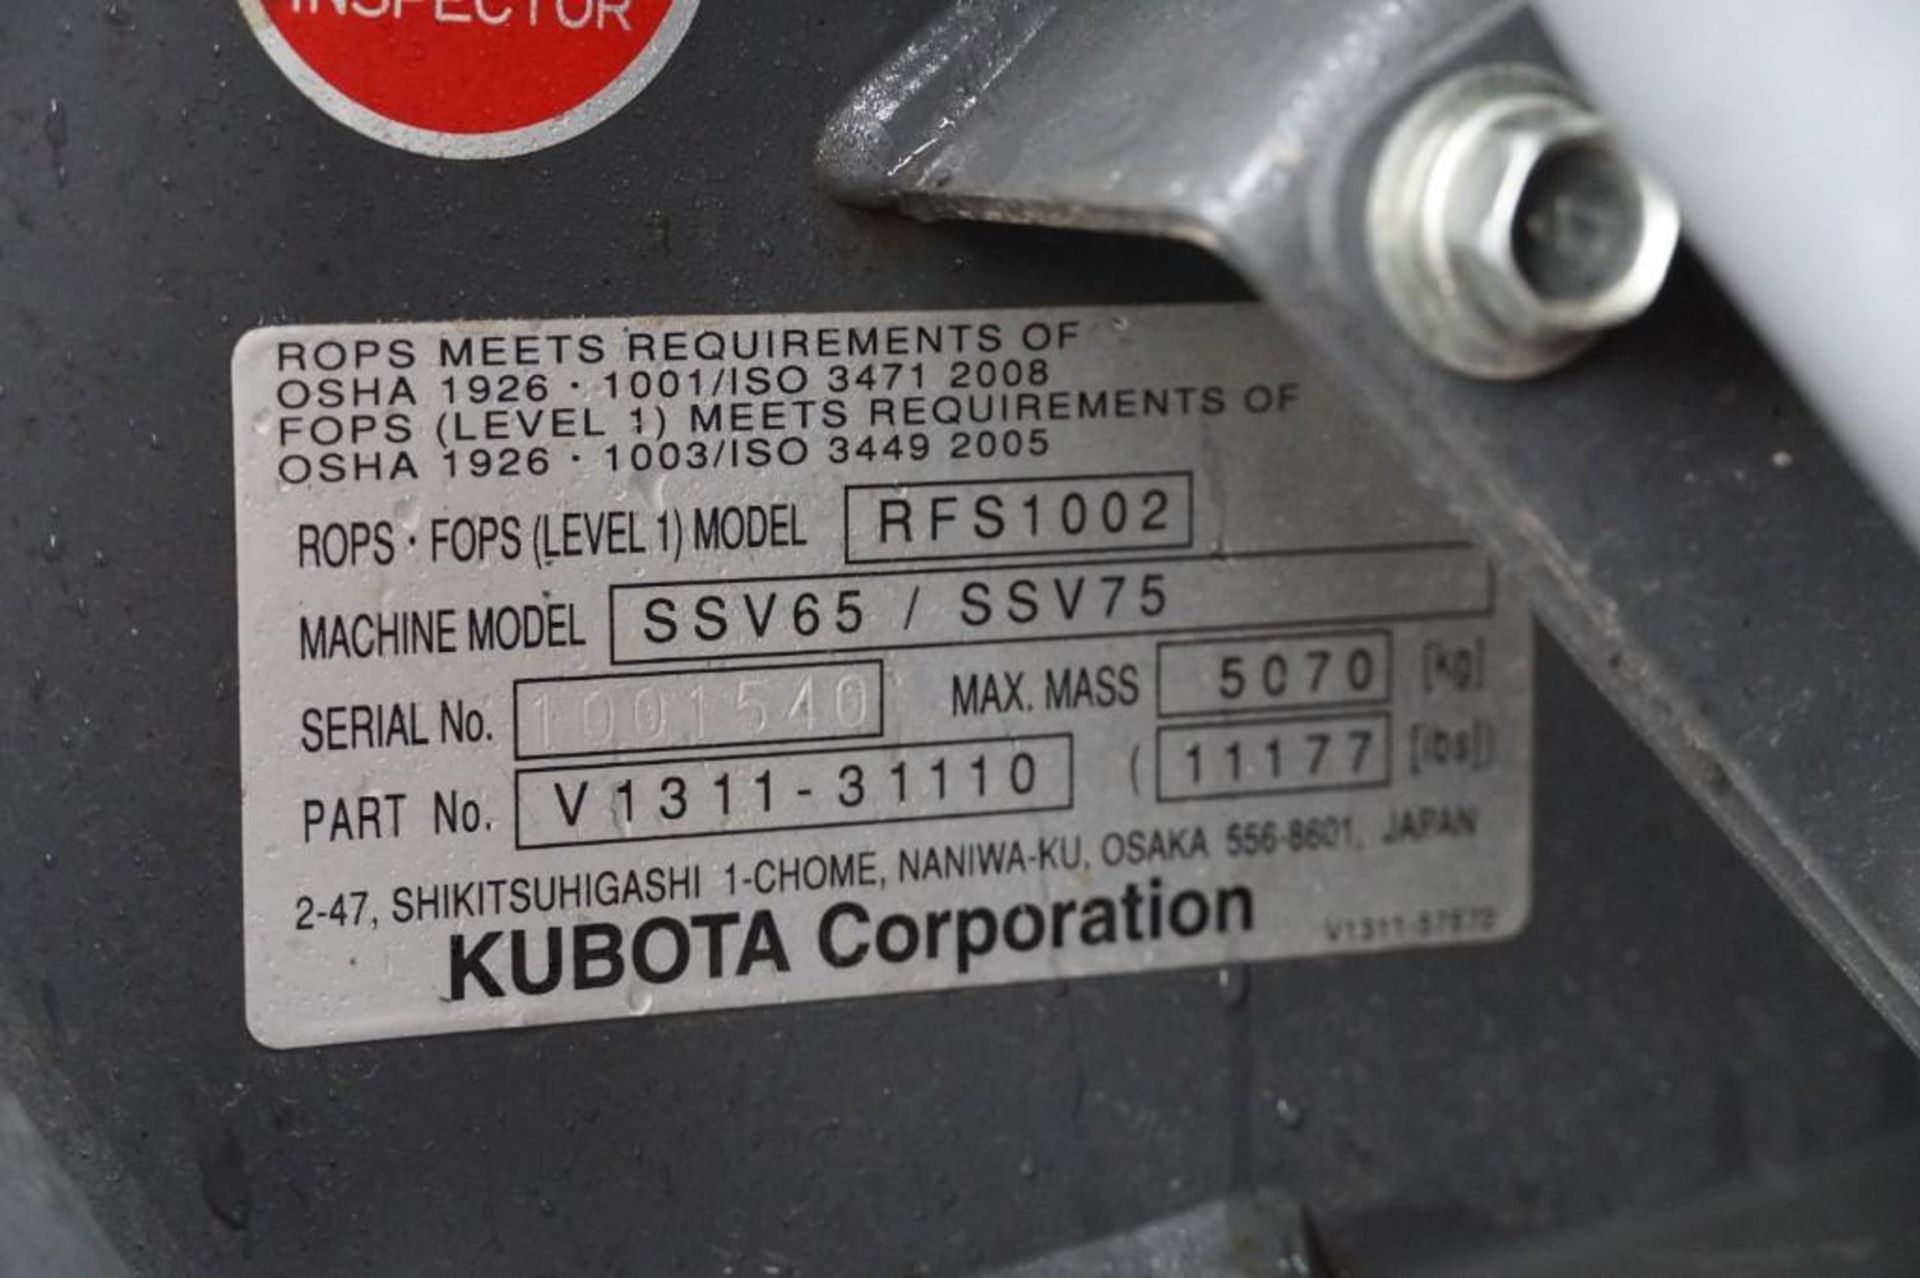 2016 Kubota SSV65 Skid Steer - Image 19 of 44